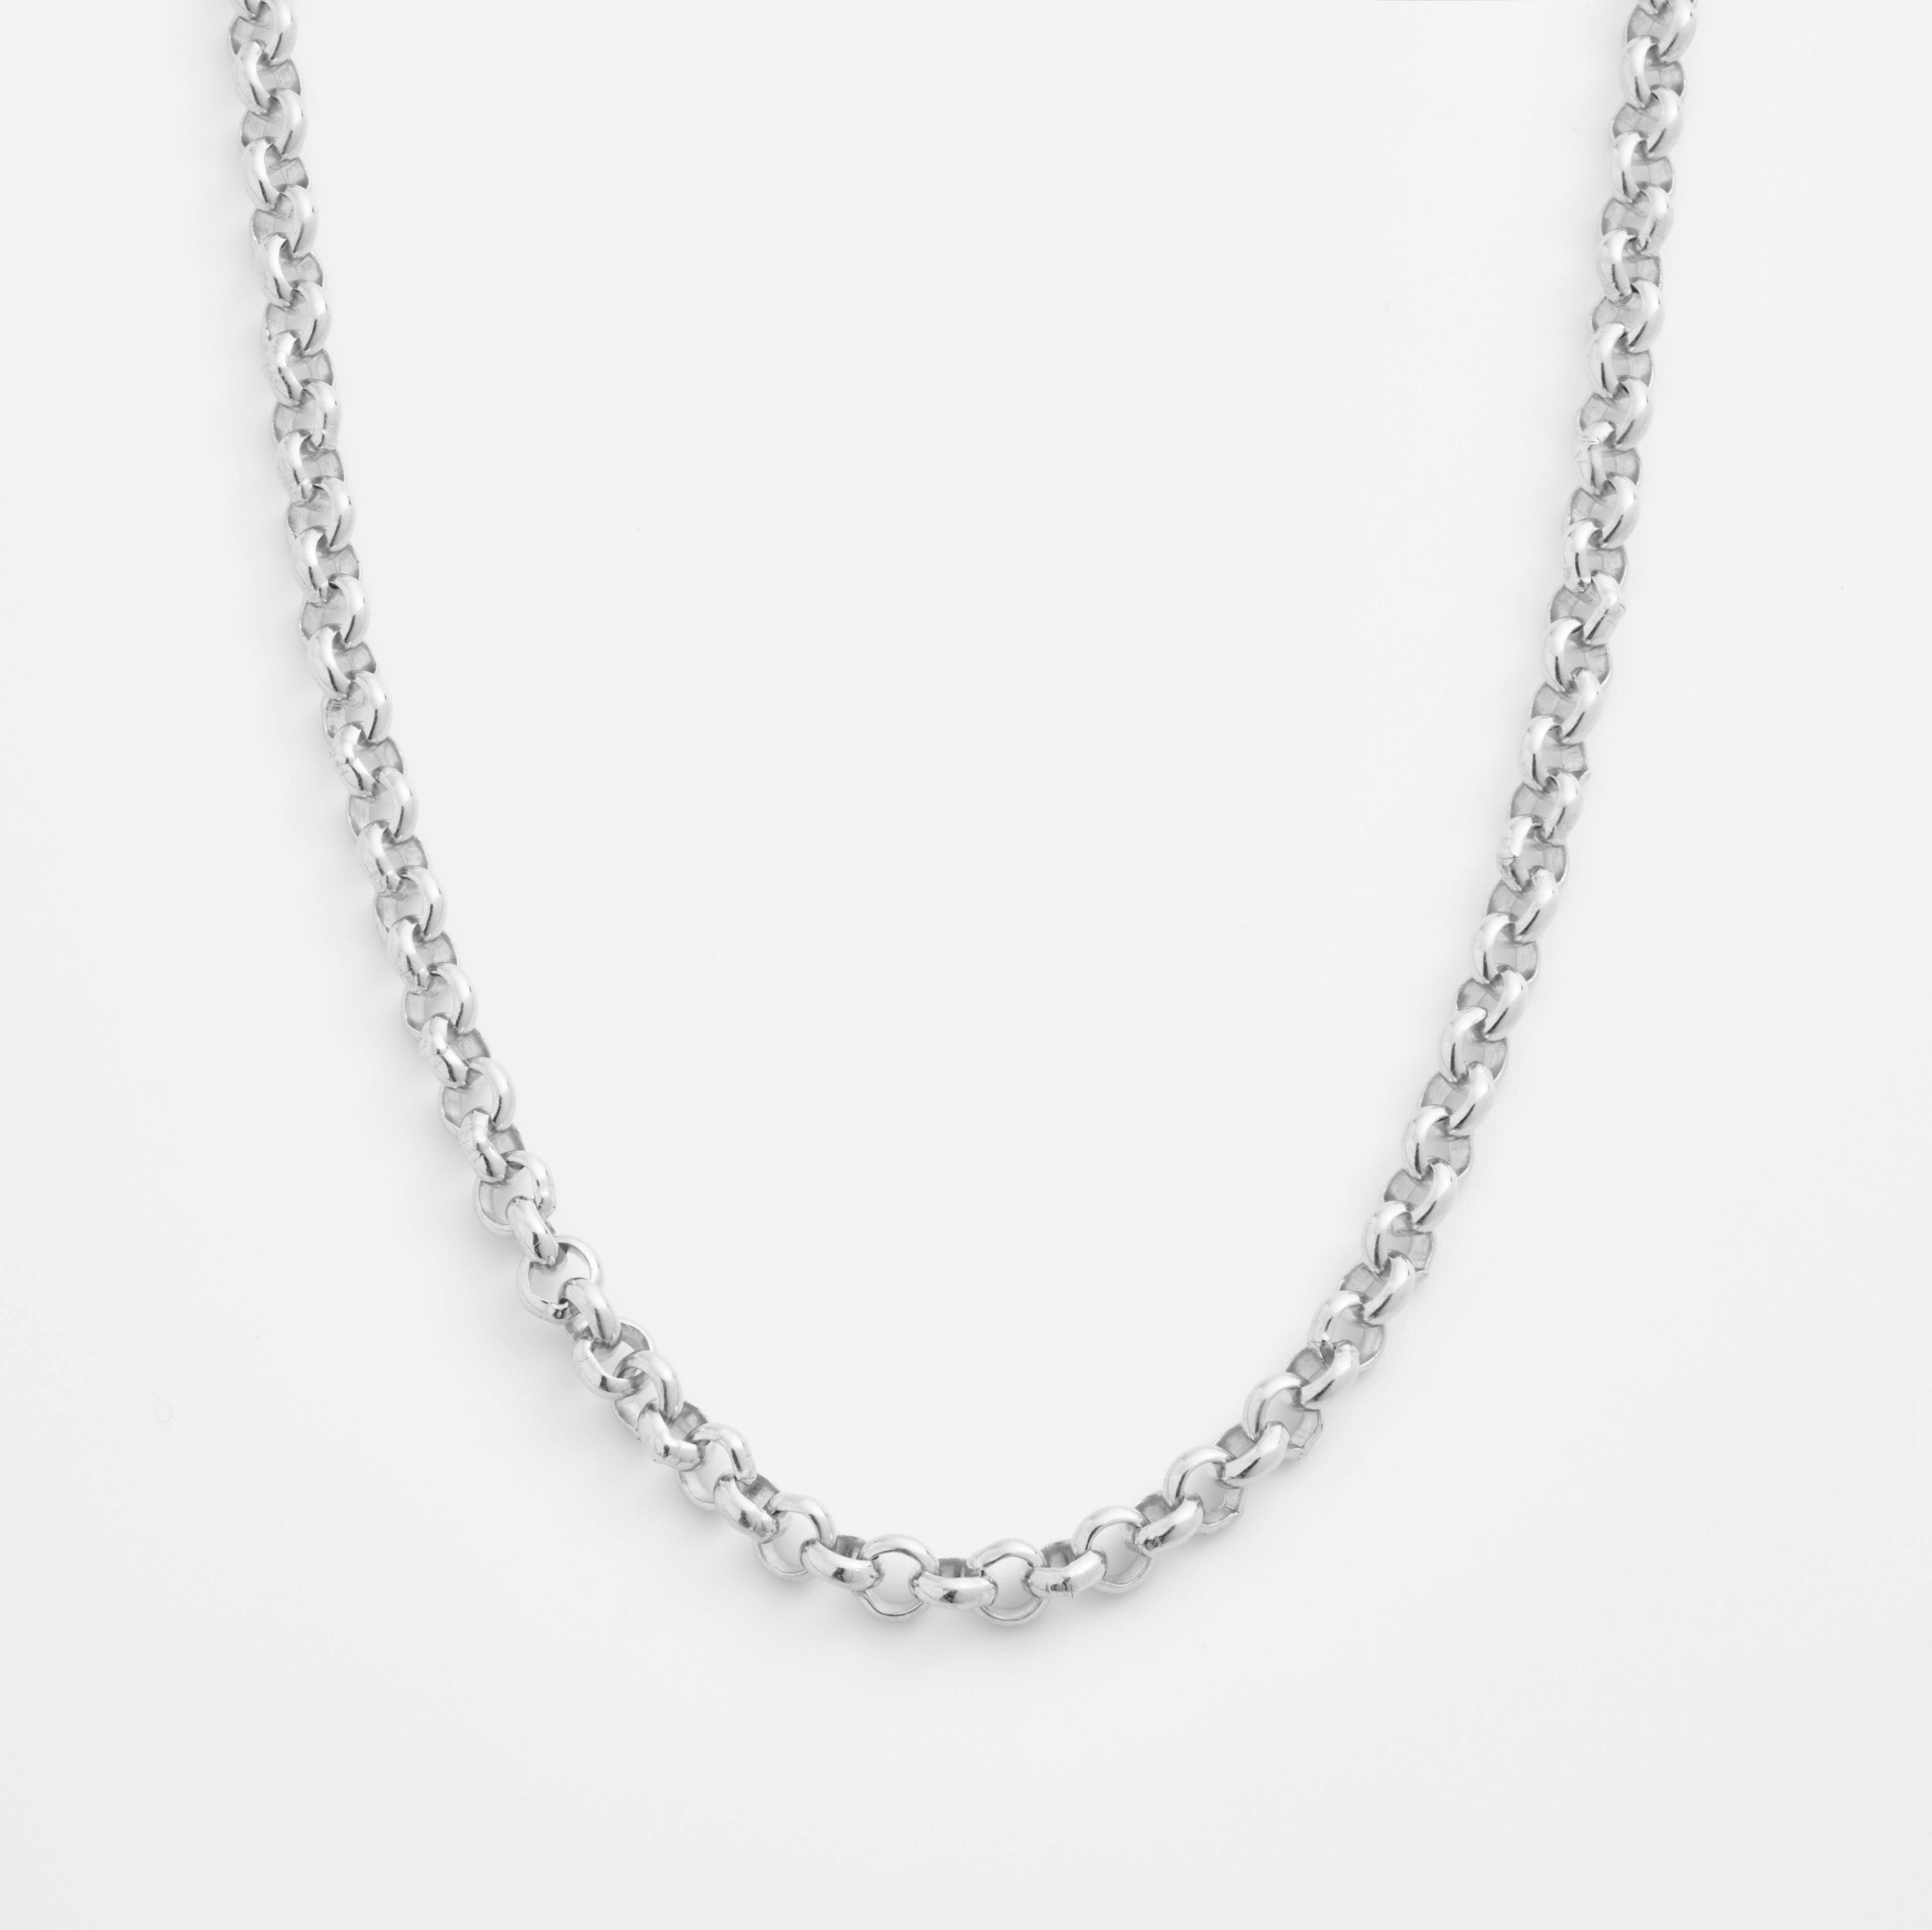 Shop Platinum Necklace Chains Rolo Chain Necklace